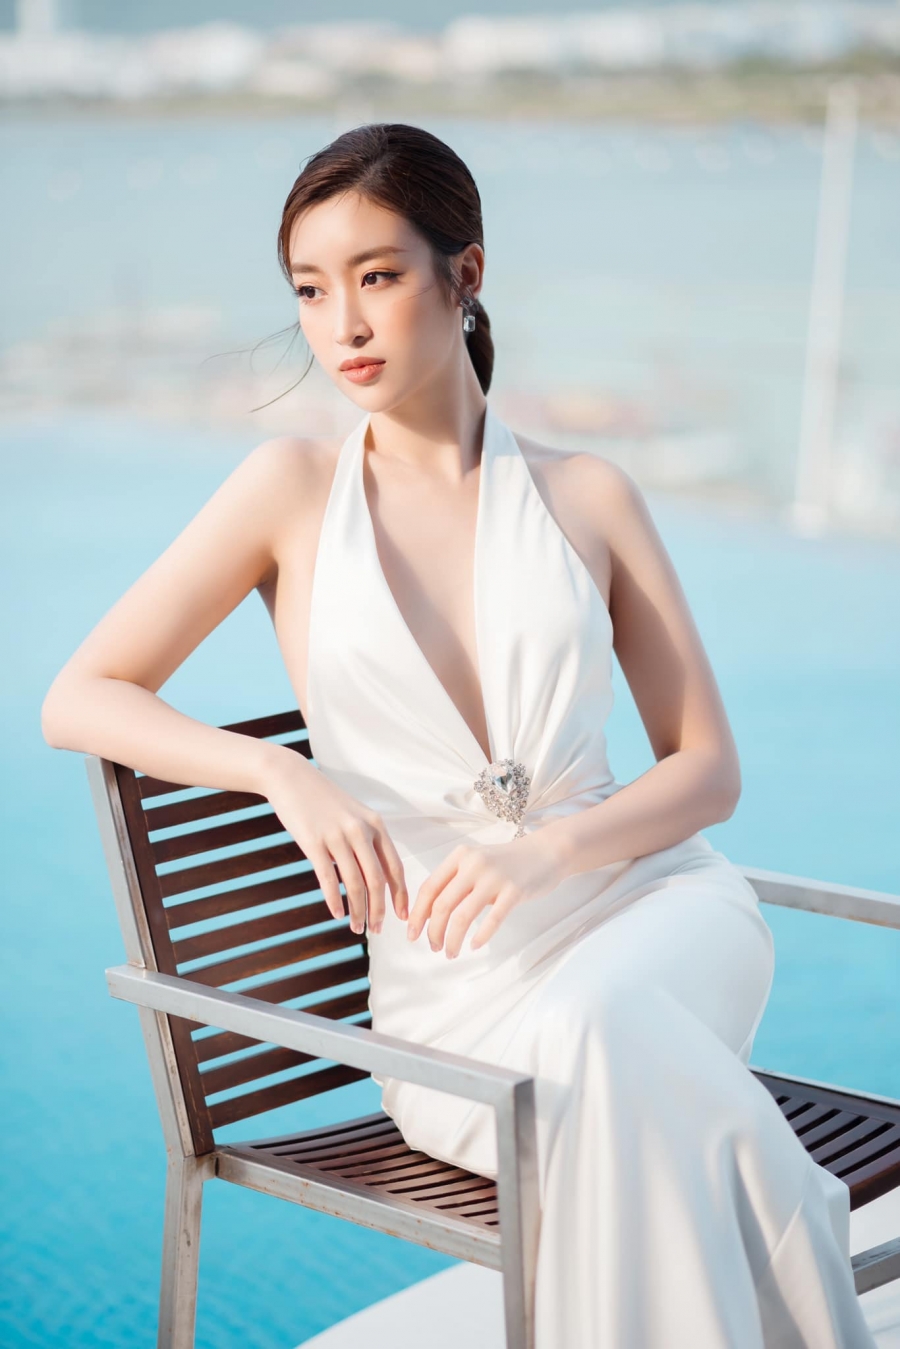 Hoa hậu Đỗ Mỹ Linh luôn được khán giả dành sự quan tâm đặc biệt ngay từ sau khi đăng quang Hoa hậu Việt Nam 2016.